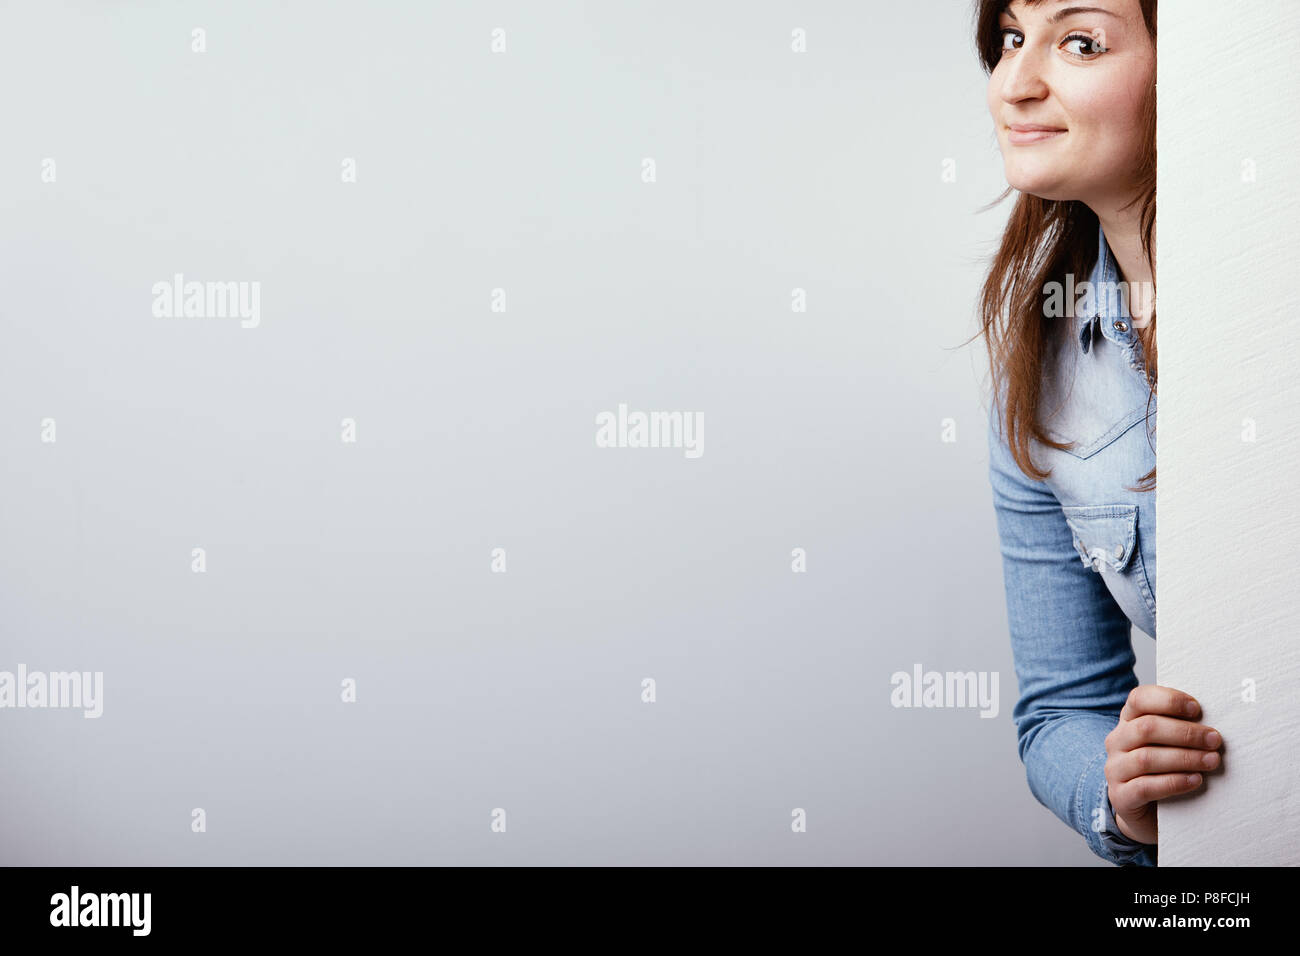 Freche junge Frau Peering um ein weißes Schild mit einem schelmischen Grinsen über einem weißen studio Hintergrund mit Kopie Raum Stockfoto